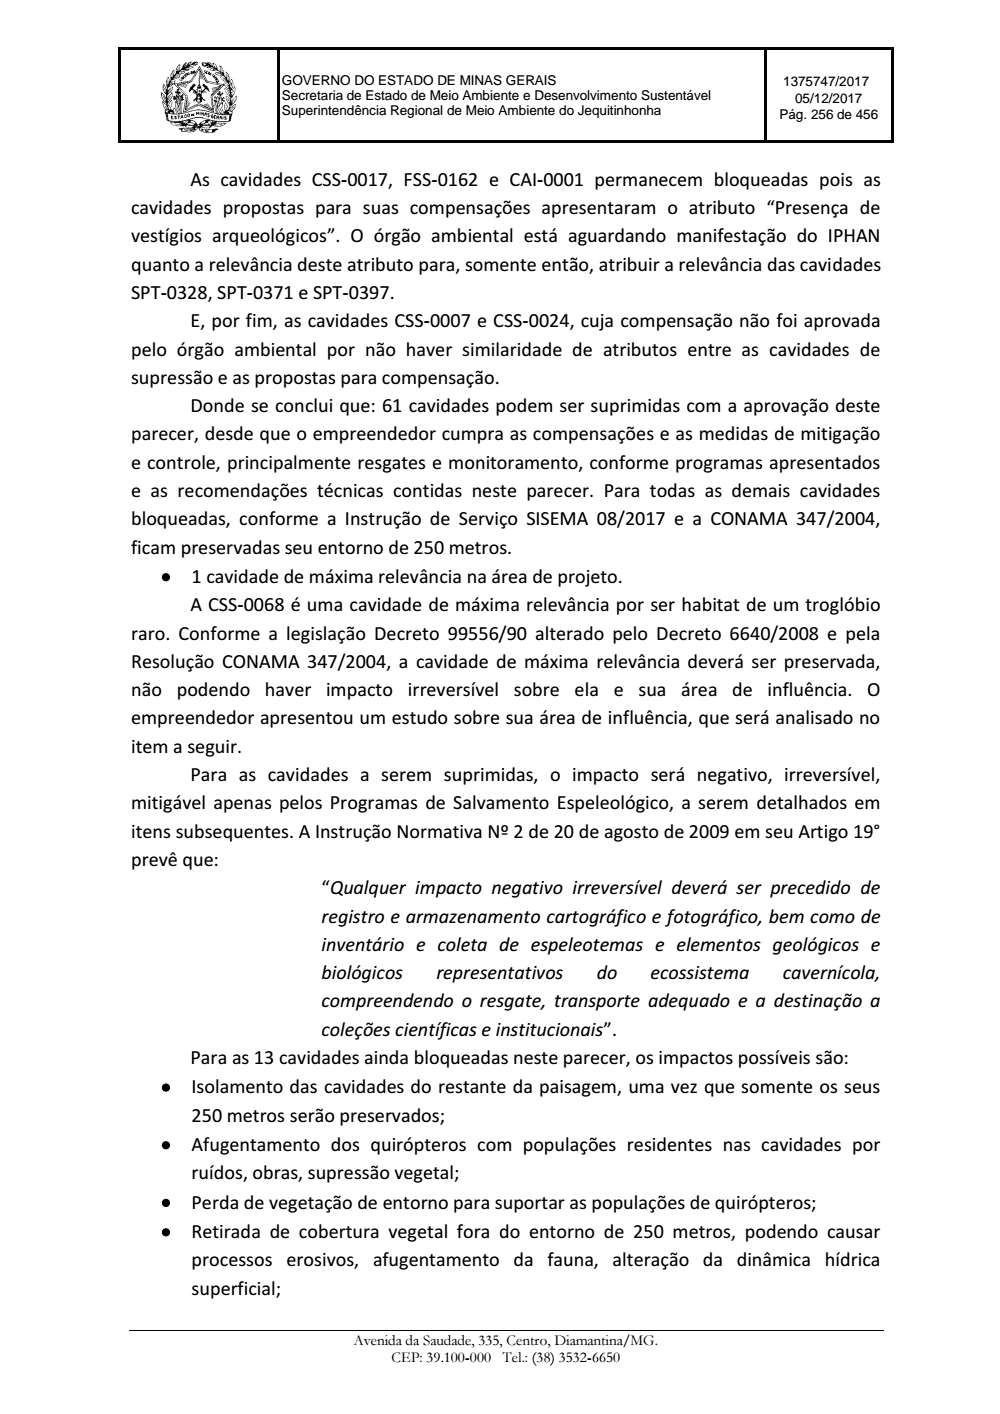 Page 256 from Parecer único da Secretaria de estado de Meio Ambiente e Desenvolvimento Sustentável (SEMAD)